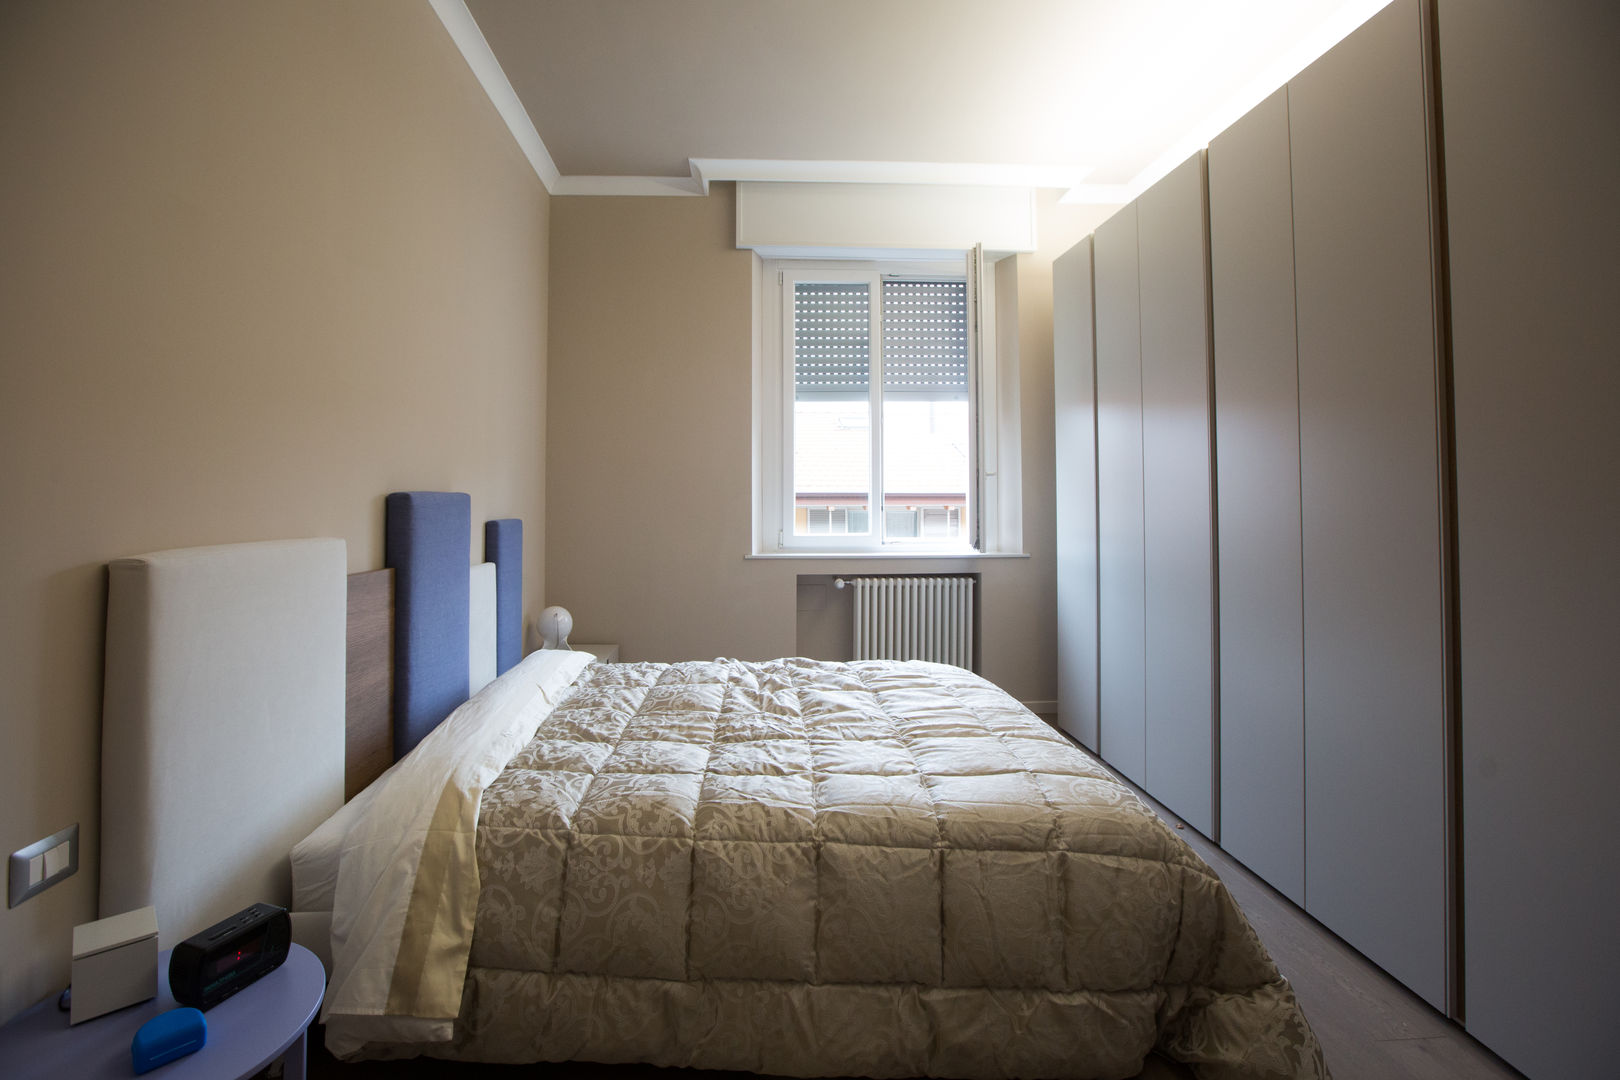 Ristrutturazione camera da letto appartamento in via Bramante Milano Ristrutturazione Case Camera da letto moderna camera da letto,arredo camera,ammodernamento